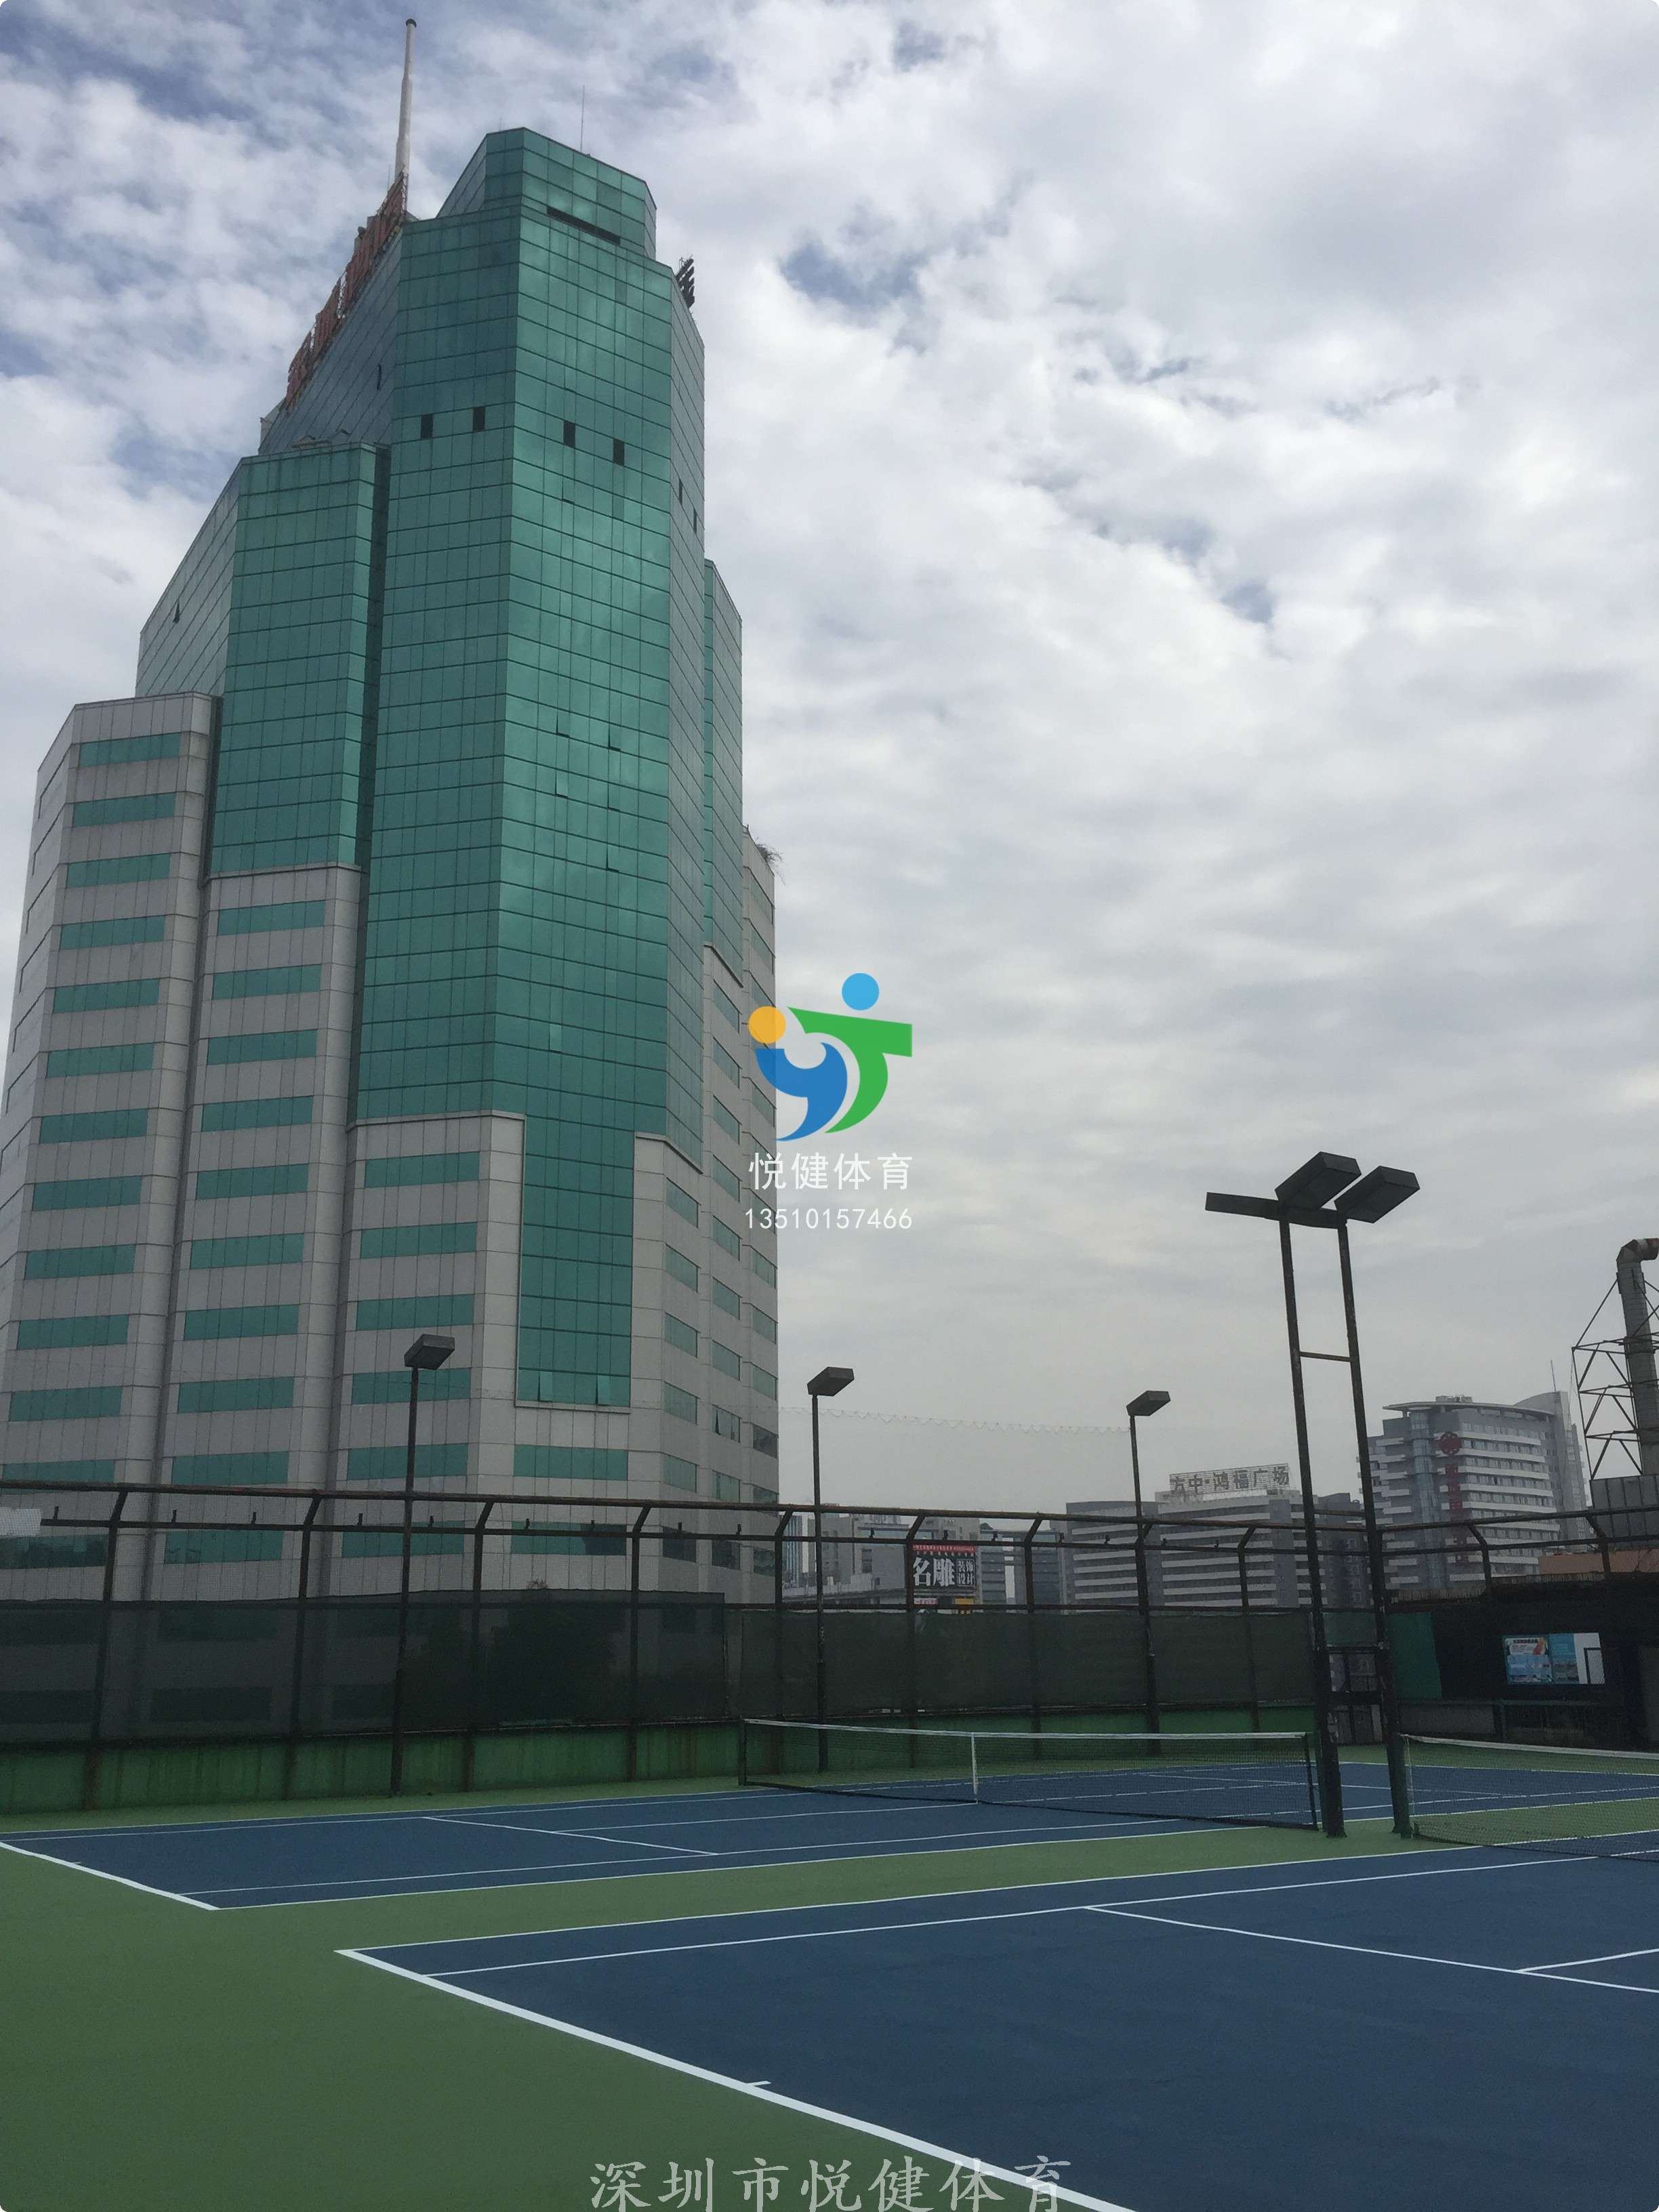 银城酒店,深圳市悦健体育,网球场建设,网球场翻新